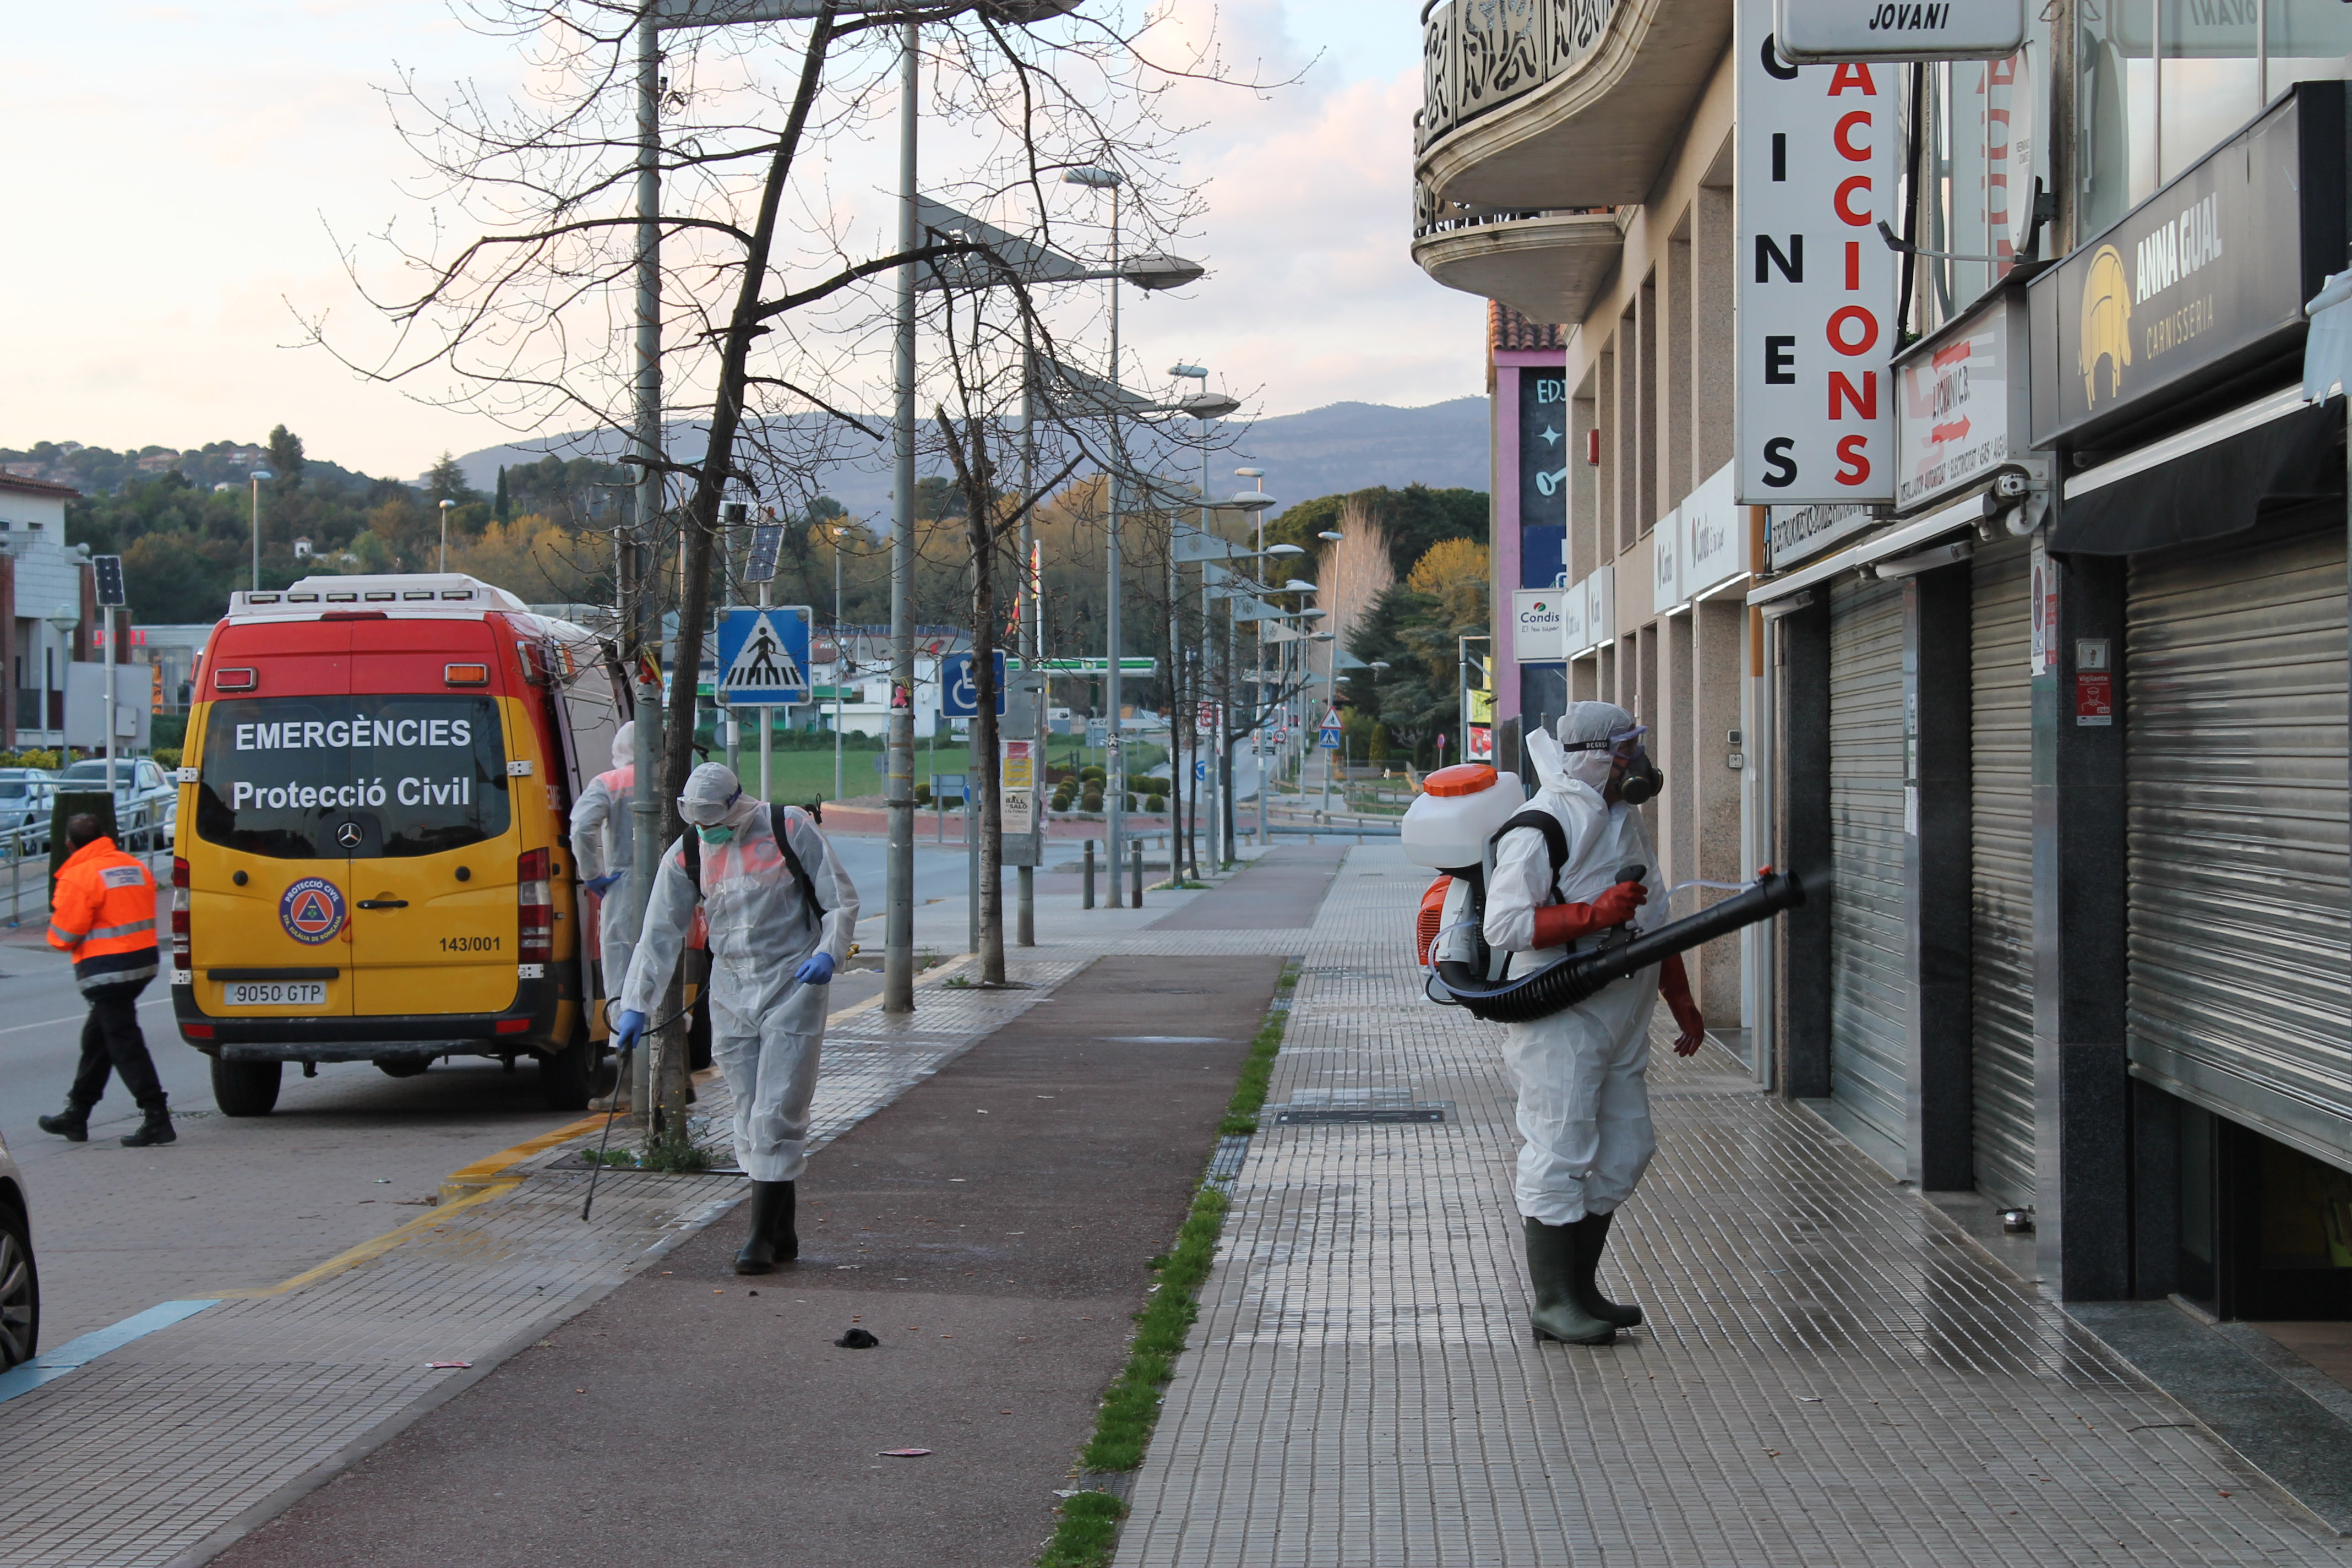 Les tasques de desinfecció al nucli urbà de Santa Eulàlia